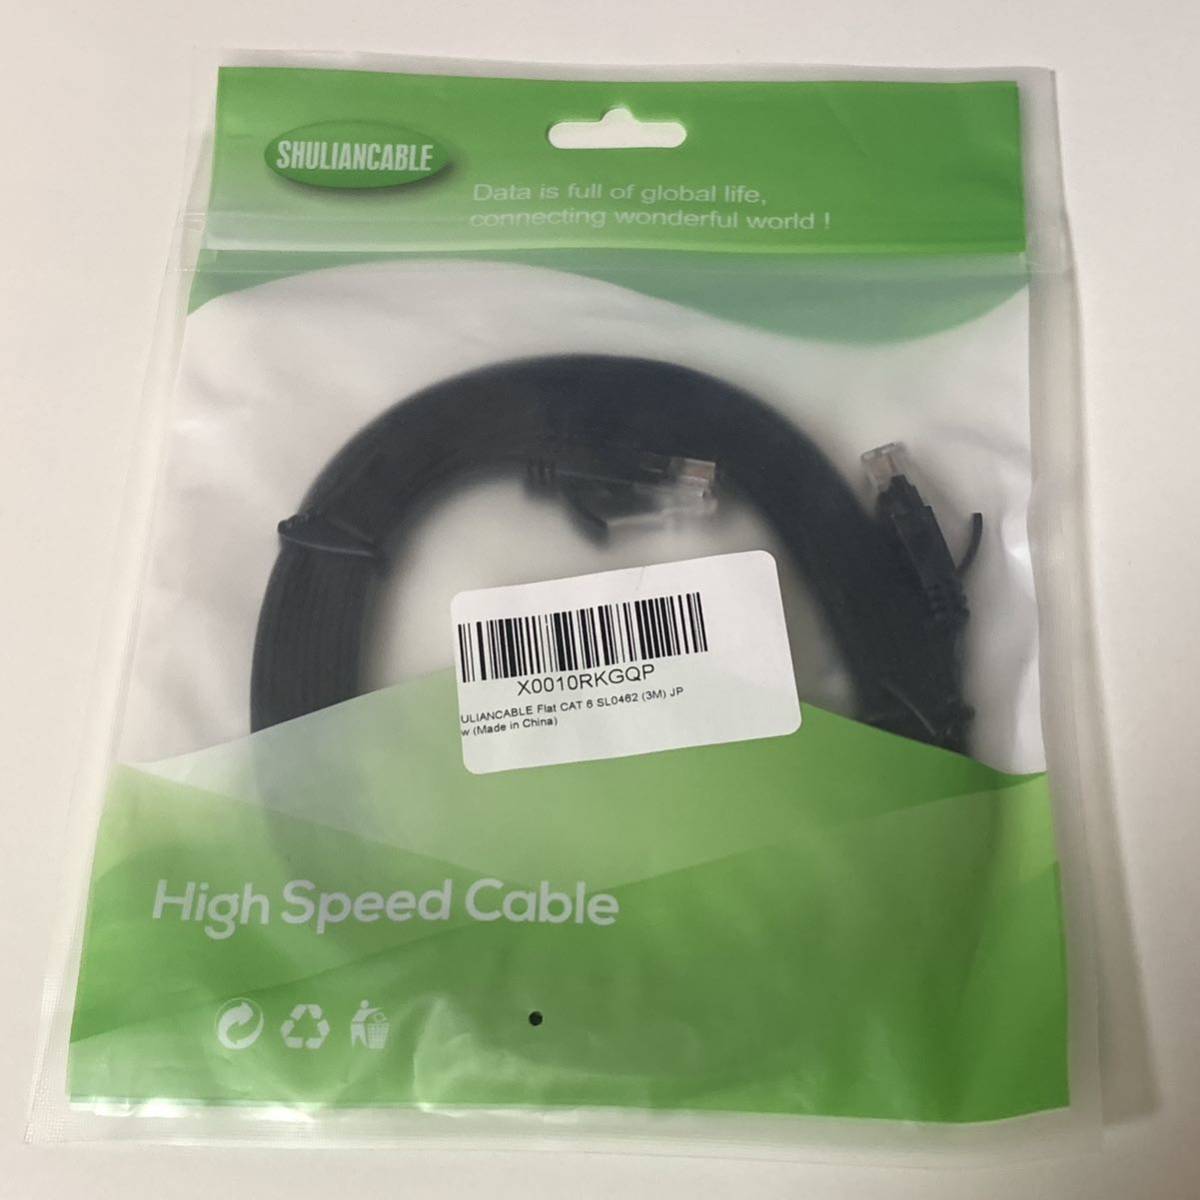 SHULIANCABLE LAN кабель CAT6 BB437 Flat модель 3m высокая скорость кабель 1Gbps/250MHz RJ45 ушко поломка предотвращение черный 